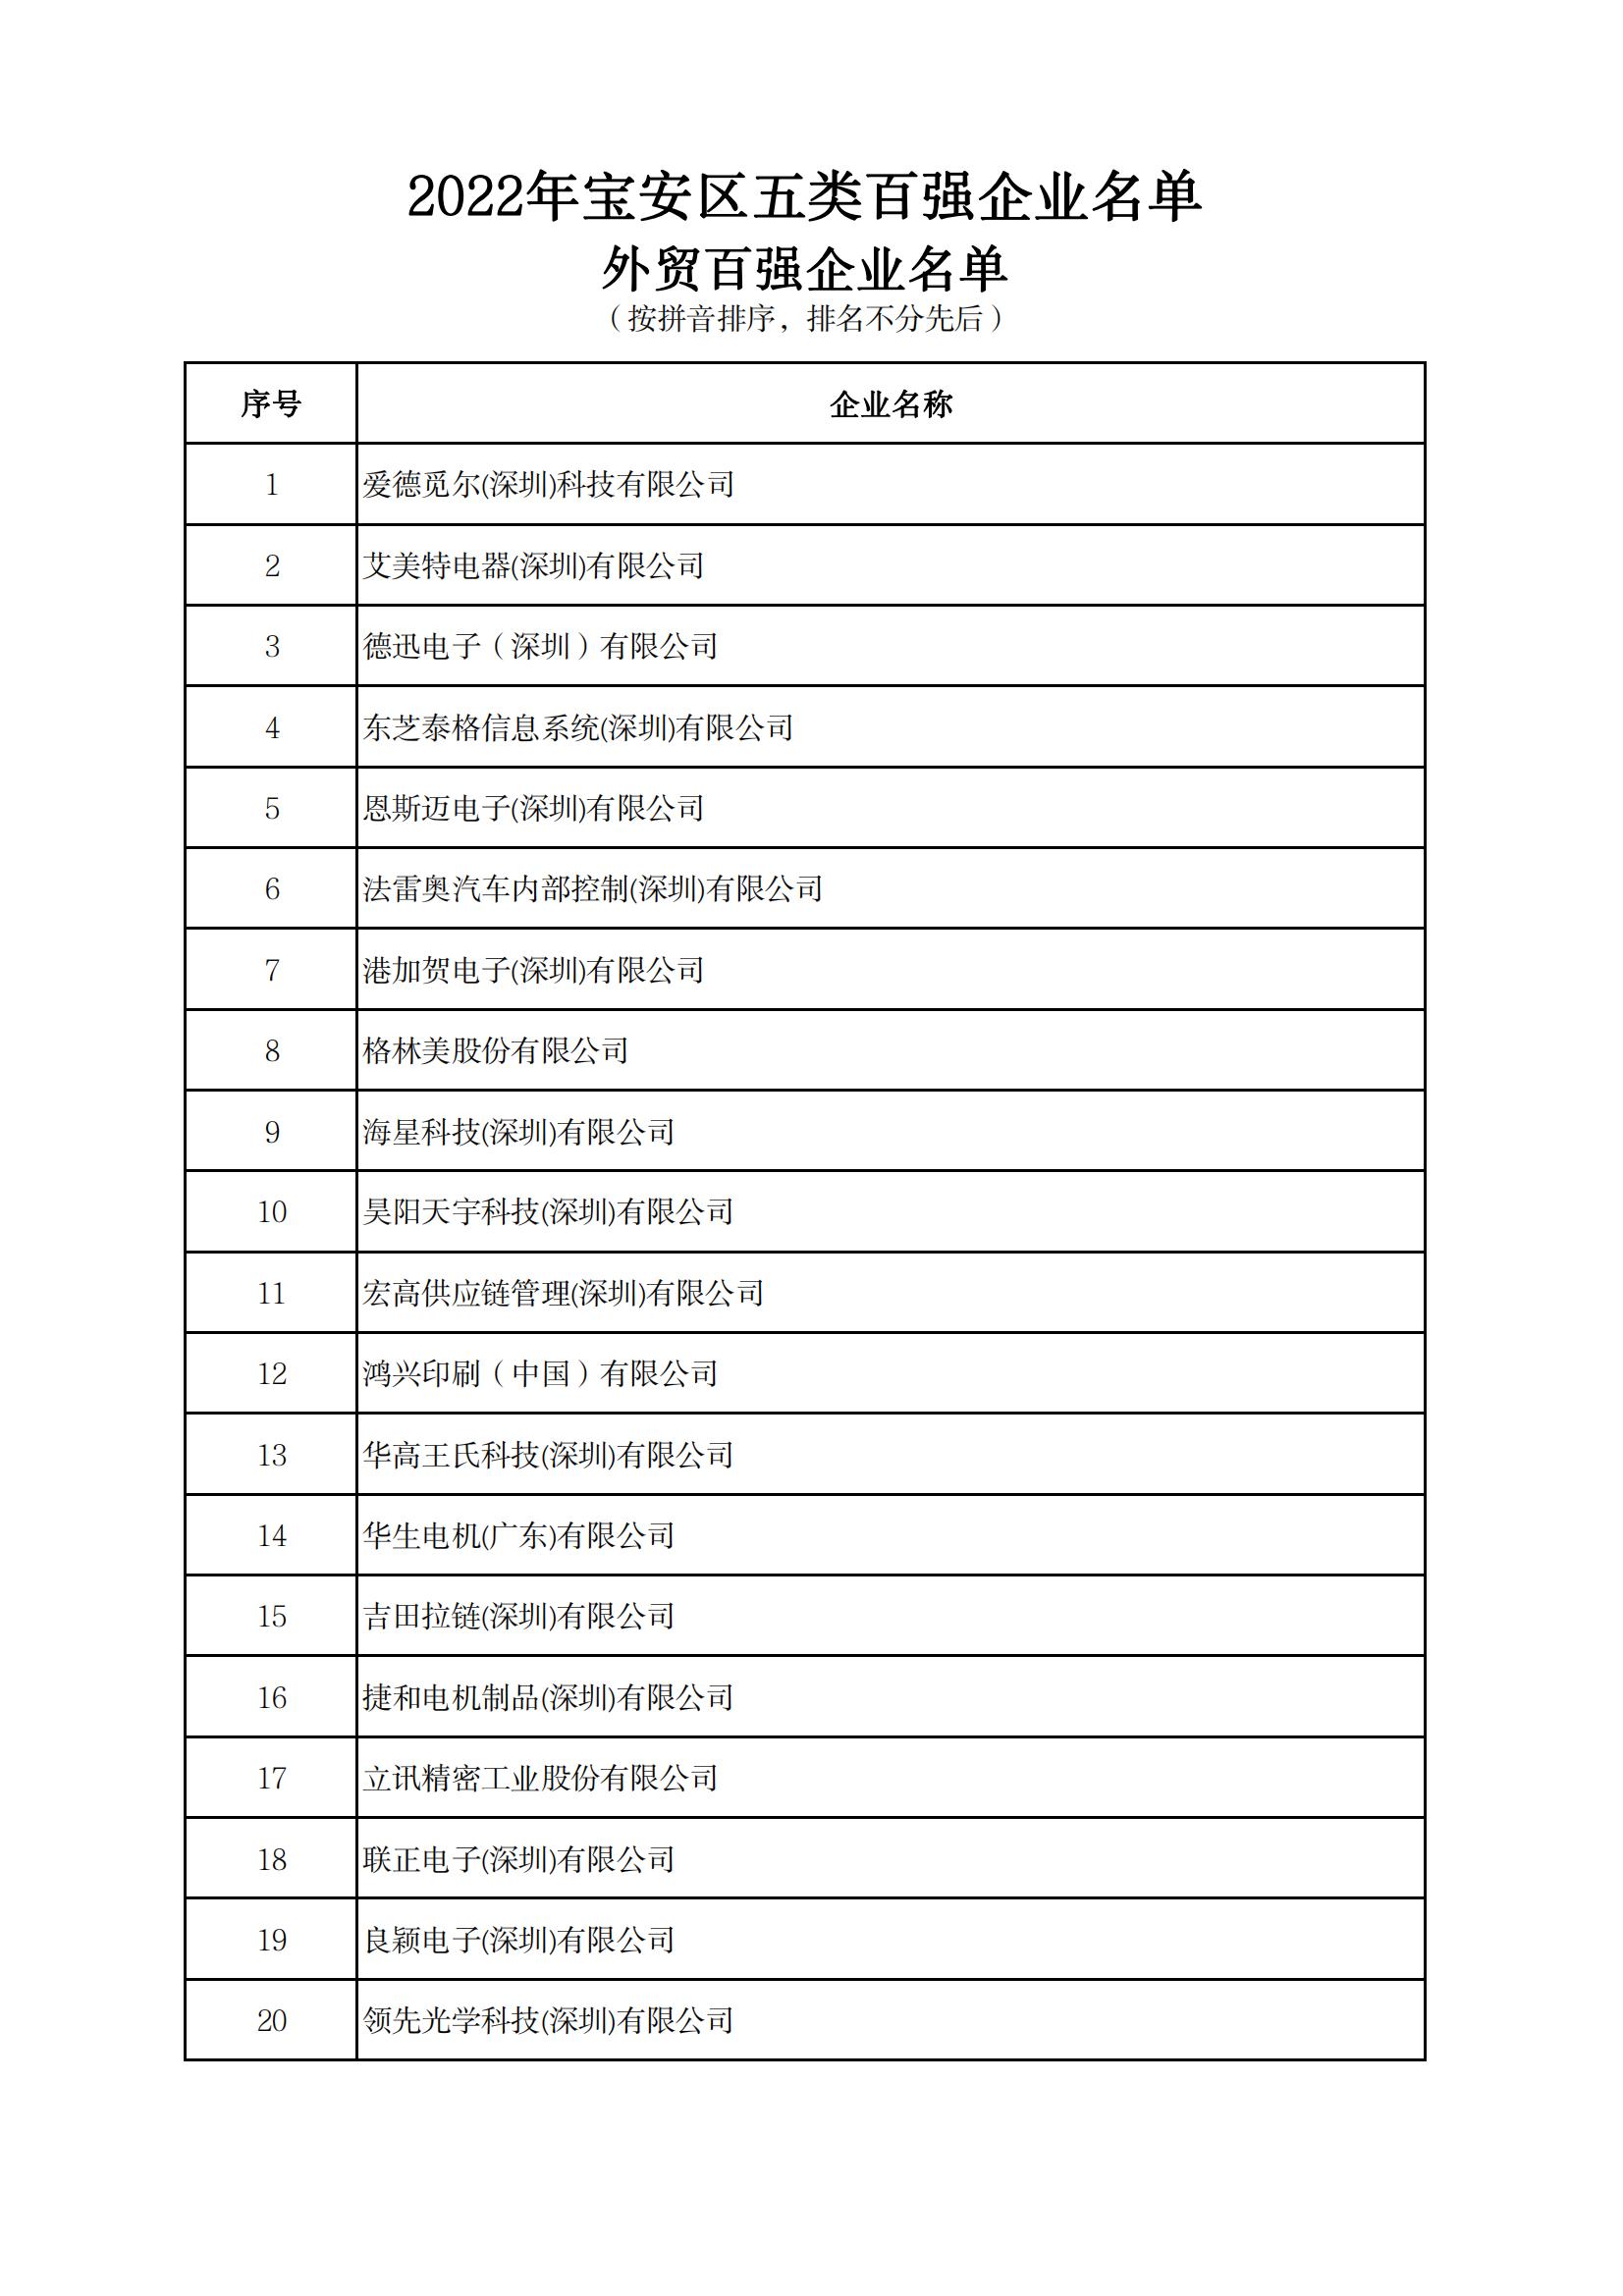 附件：2022年宝安区五类百强企业名单_15.jpg